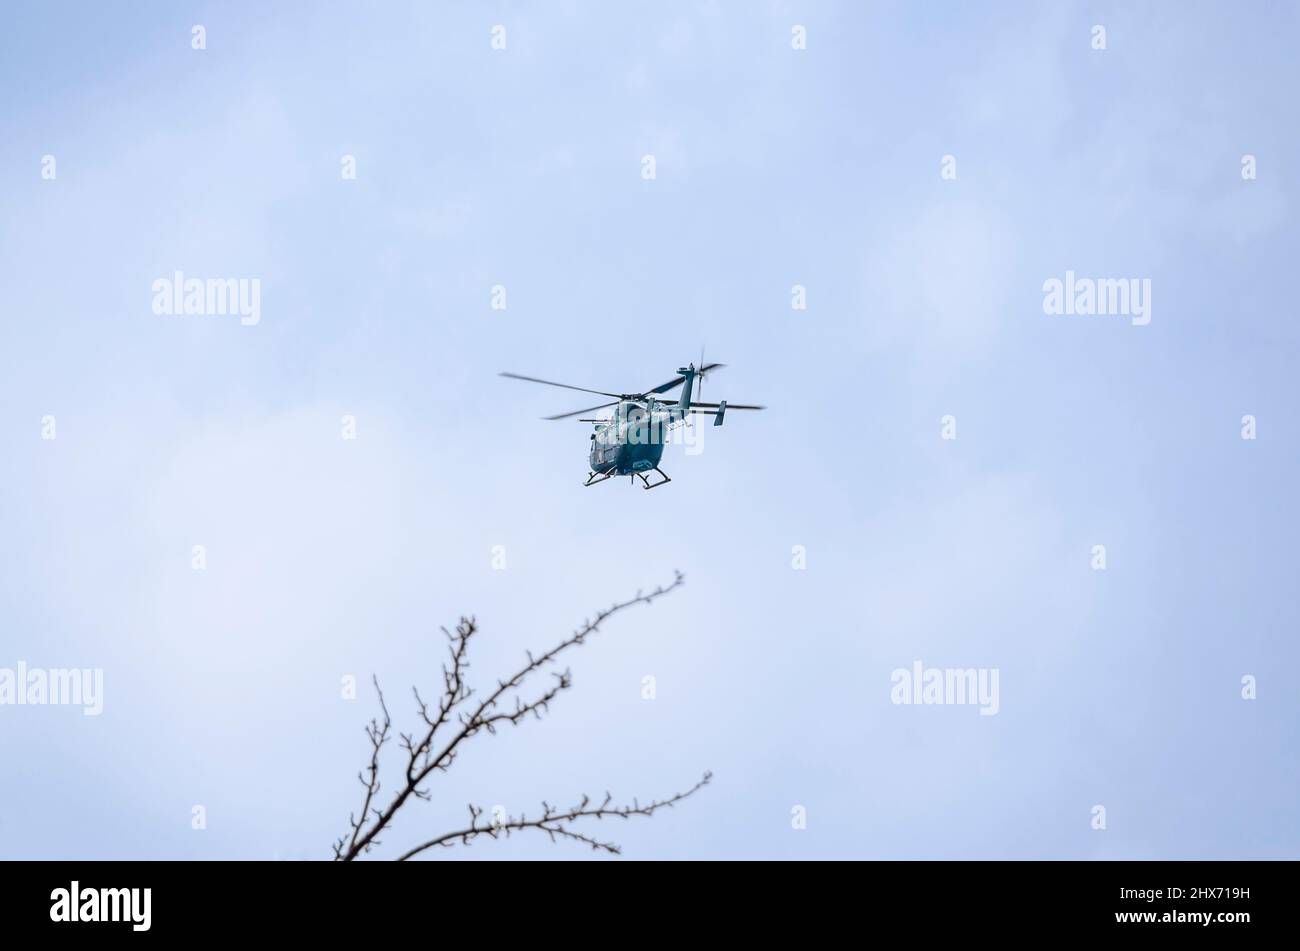 Un helicóptero Dhruv ligero avanzado del ejército indio de bajo vuelo. El helicóptero y su piloto son parte del Cuerpo de Aviación del Ejército Indio. Foto de stock